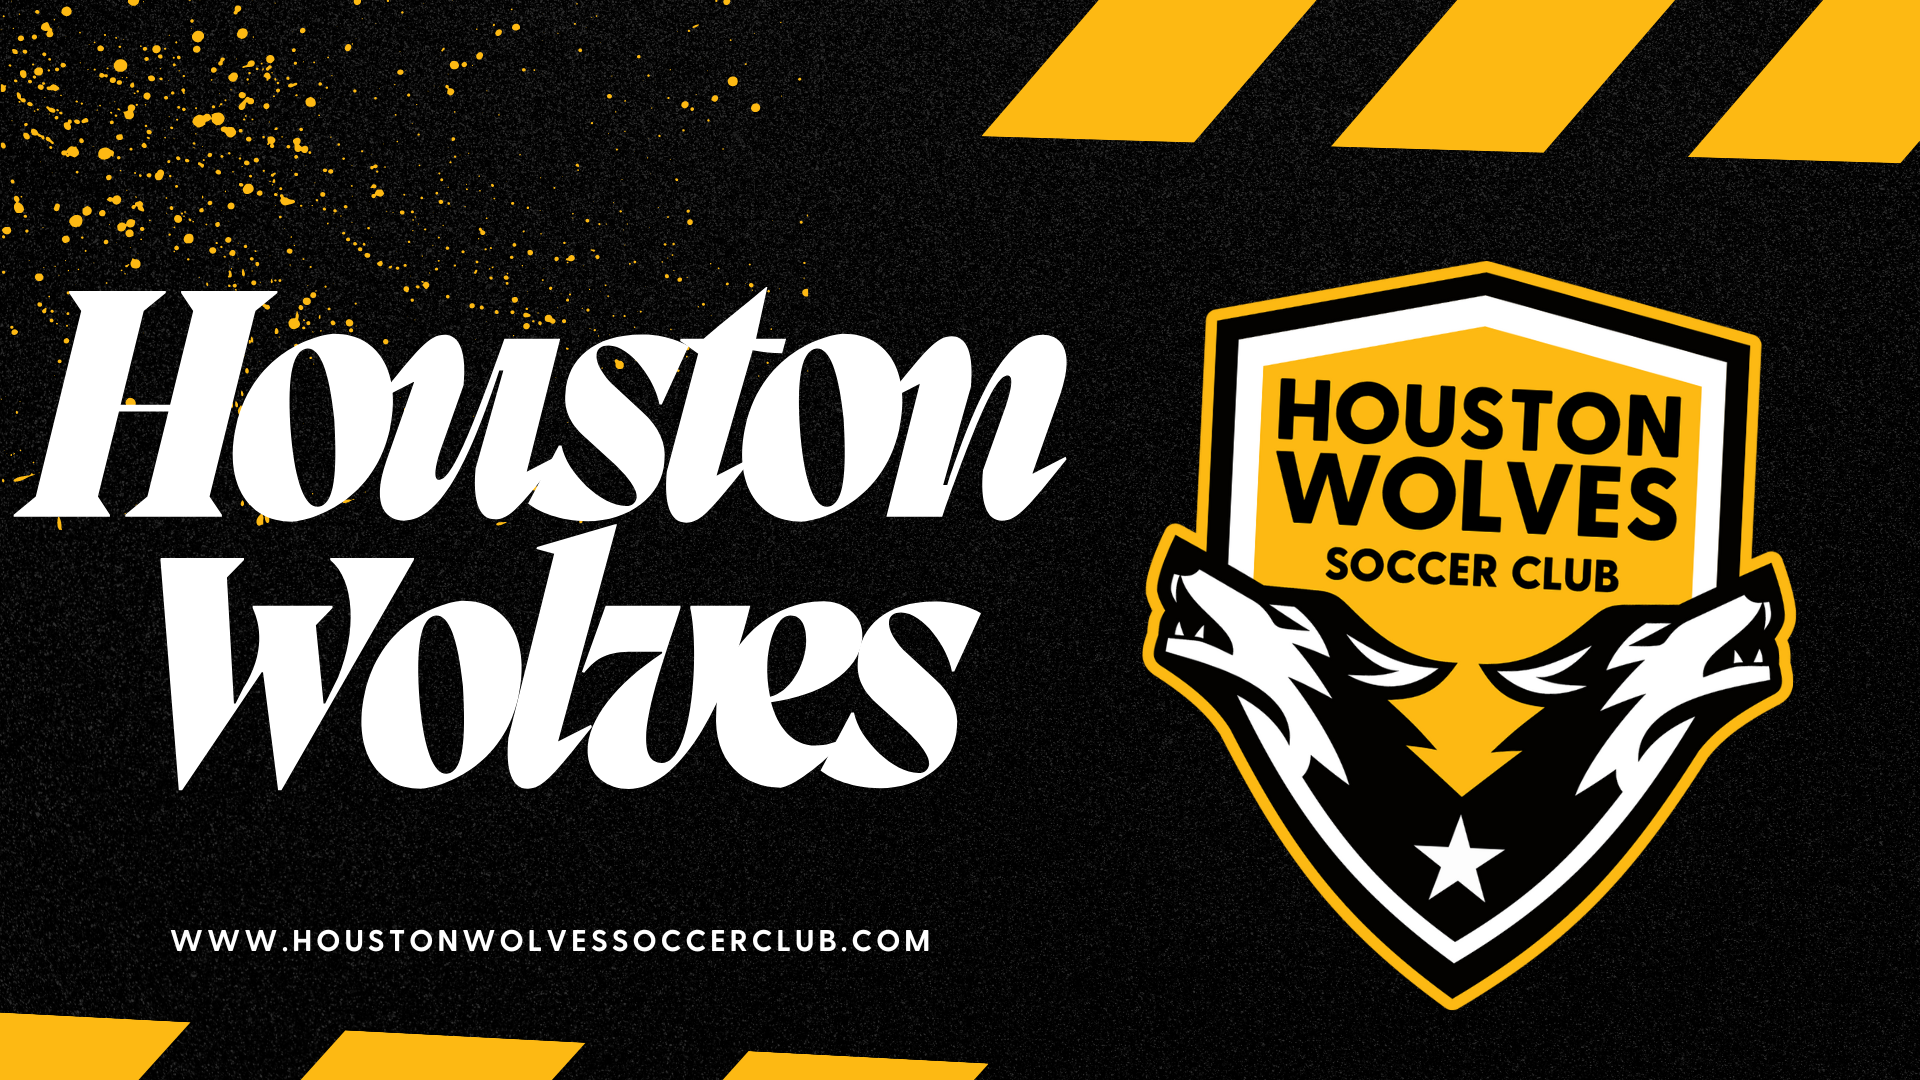 Houston Wolves Soccer Club